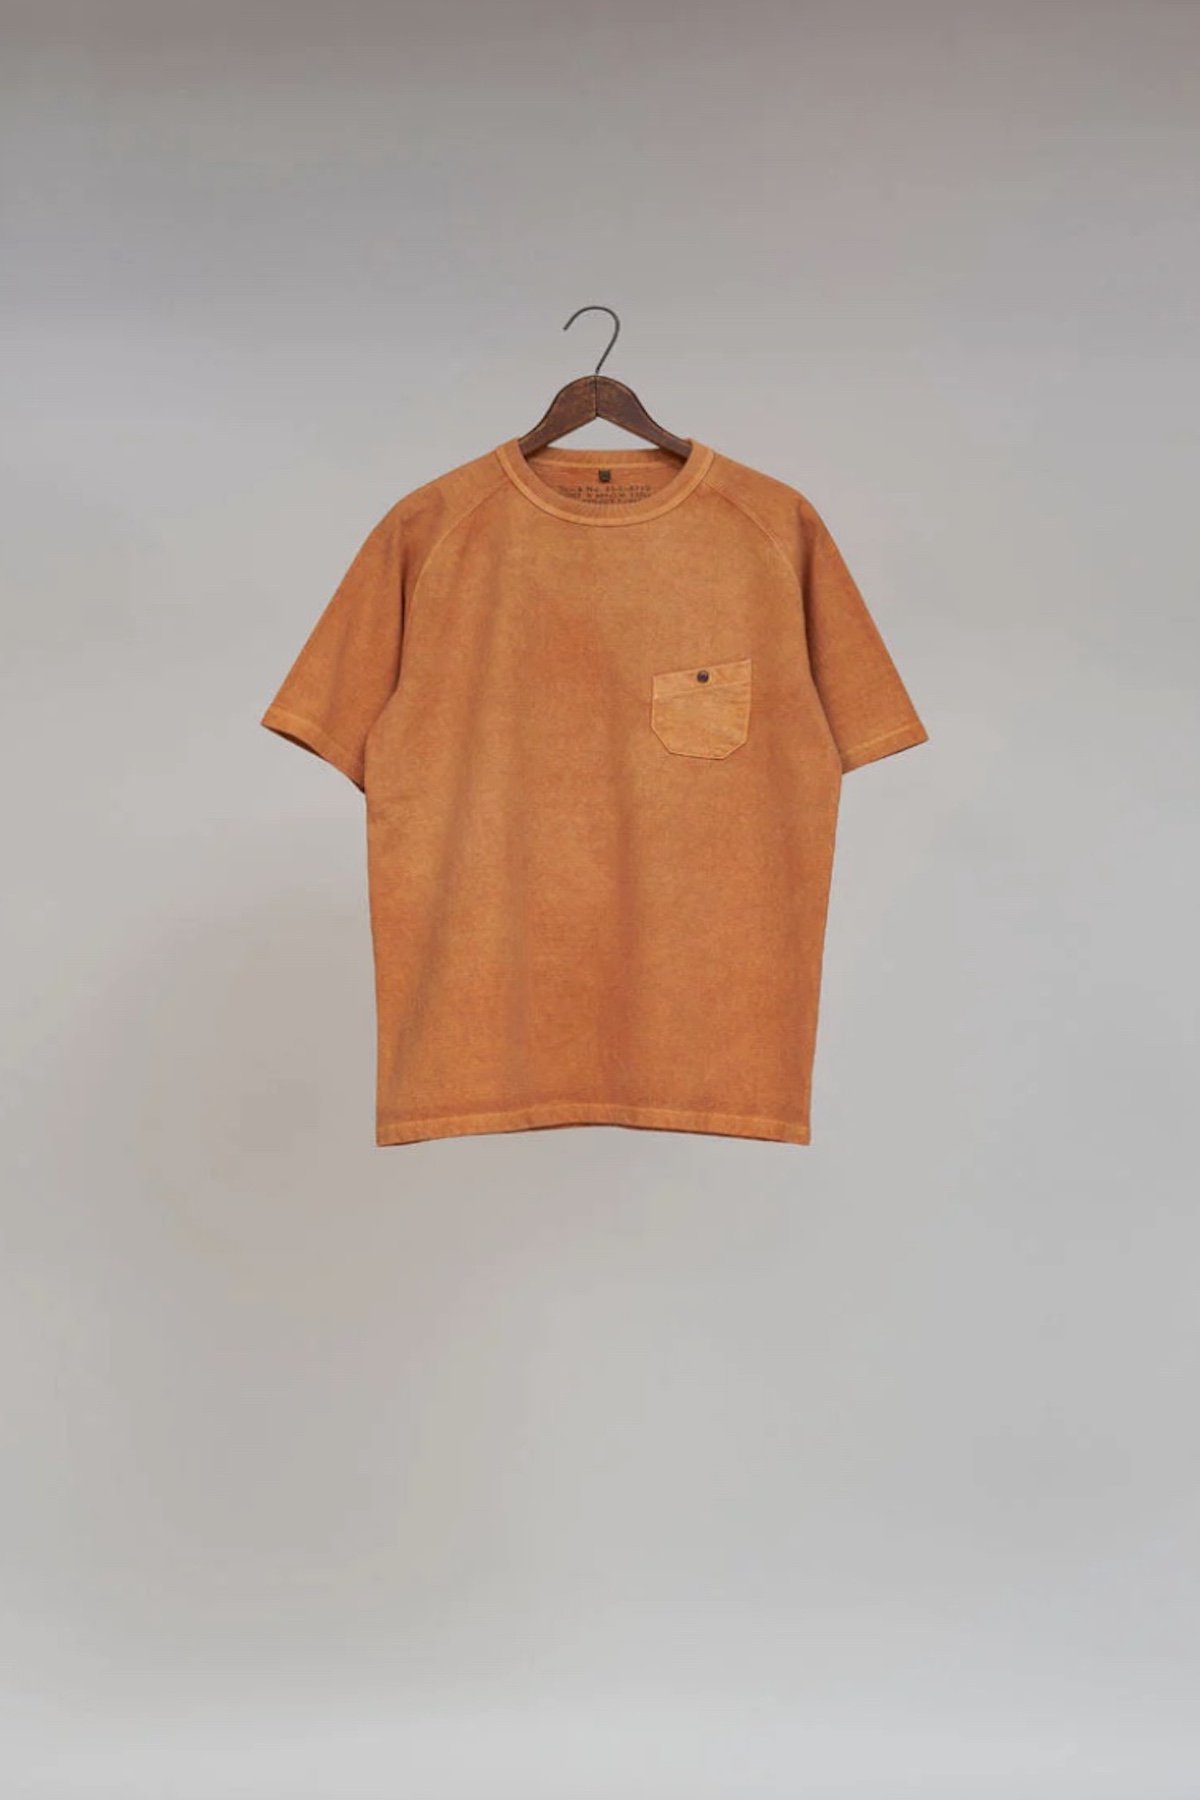 ナイジェルケーボン！ ロングTシャツ オレンジ サイズ50